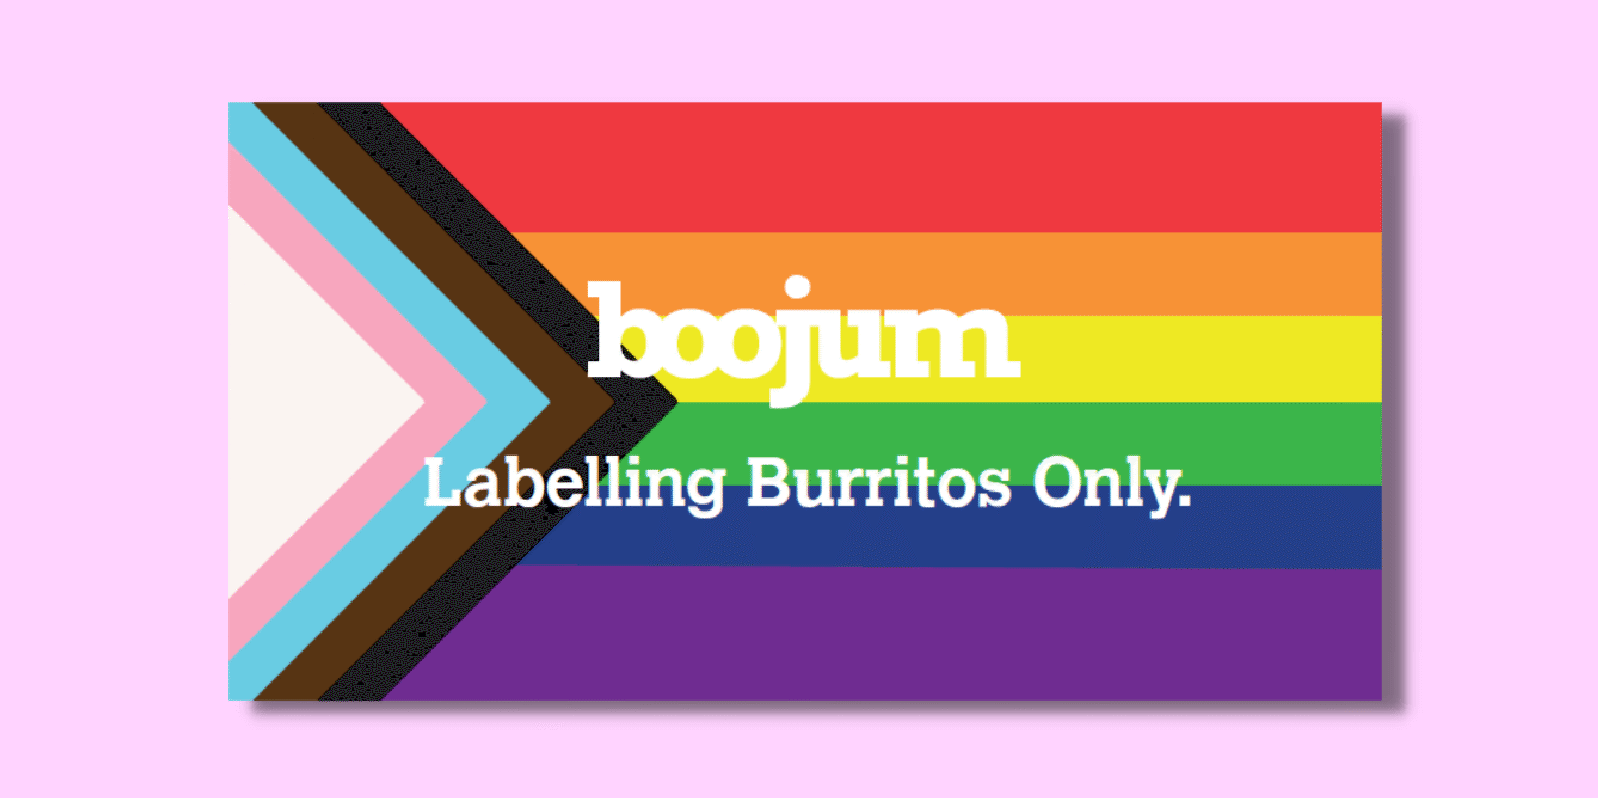 Boojum Pride burrito label